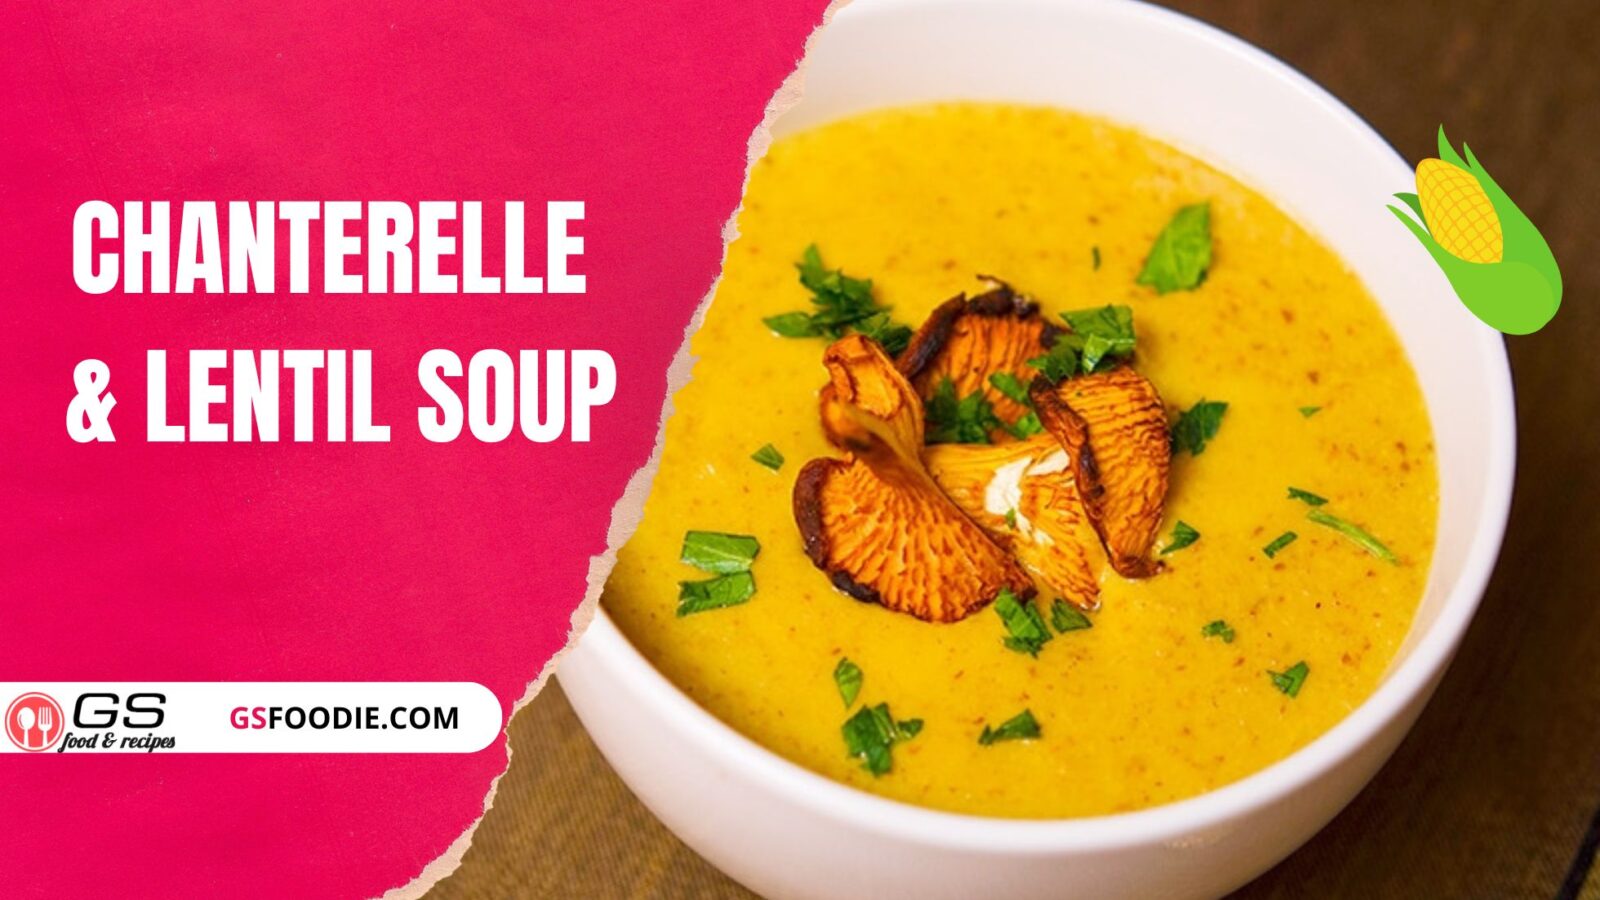 Chanterelle & Lentil Soup